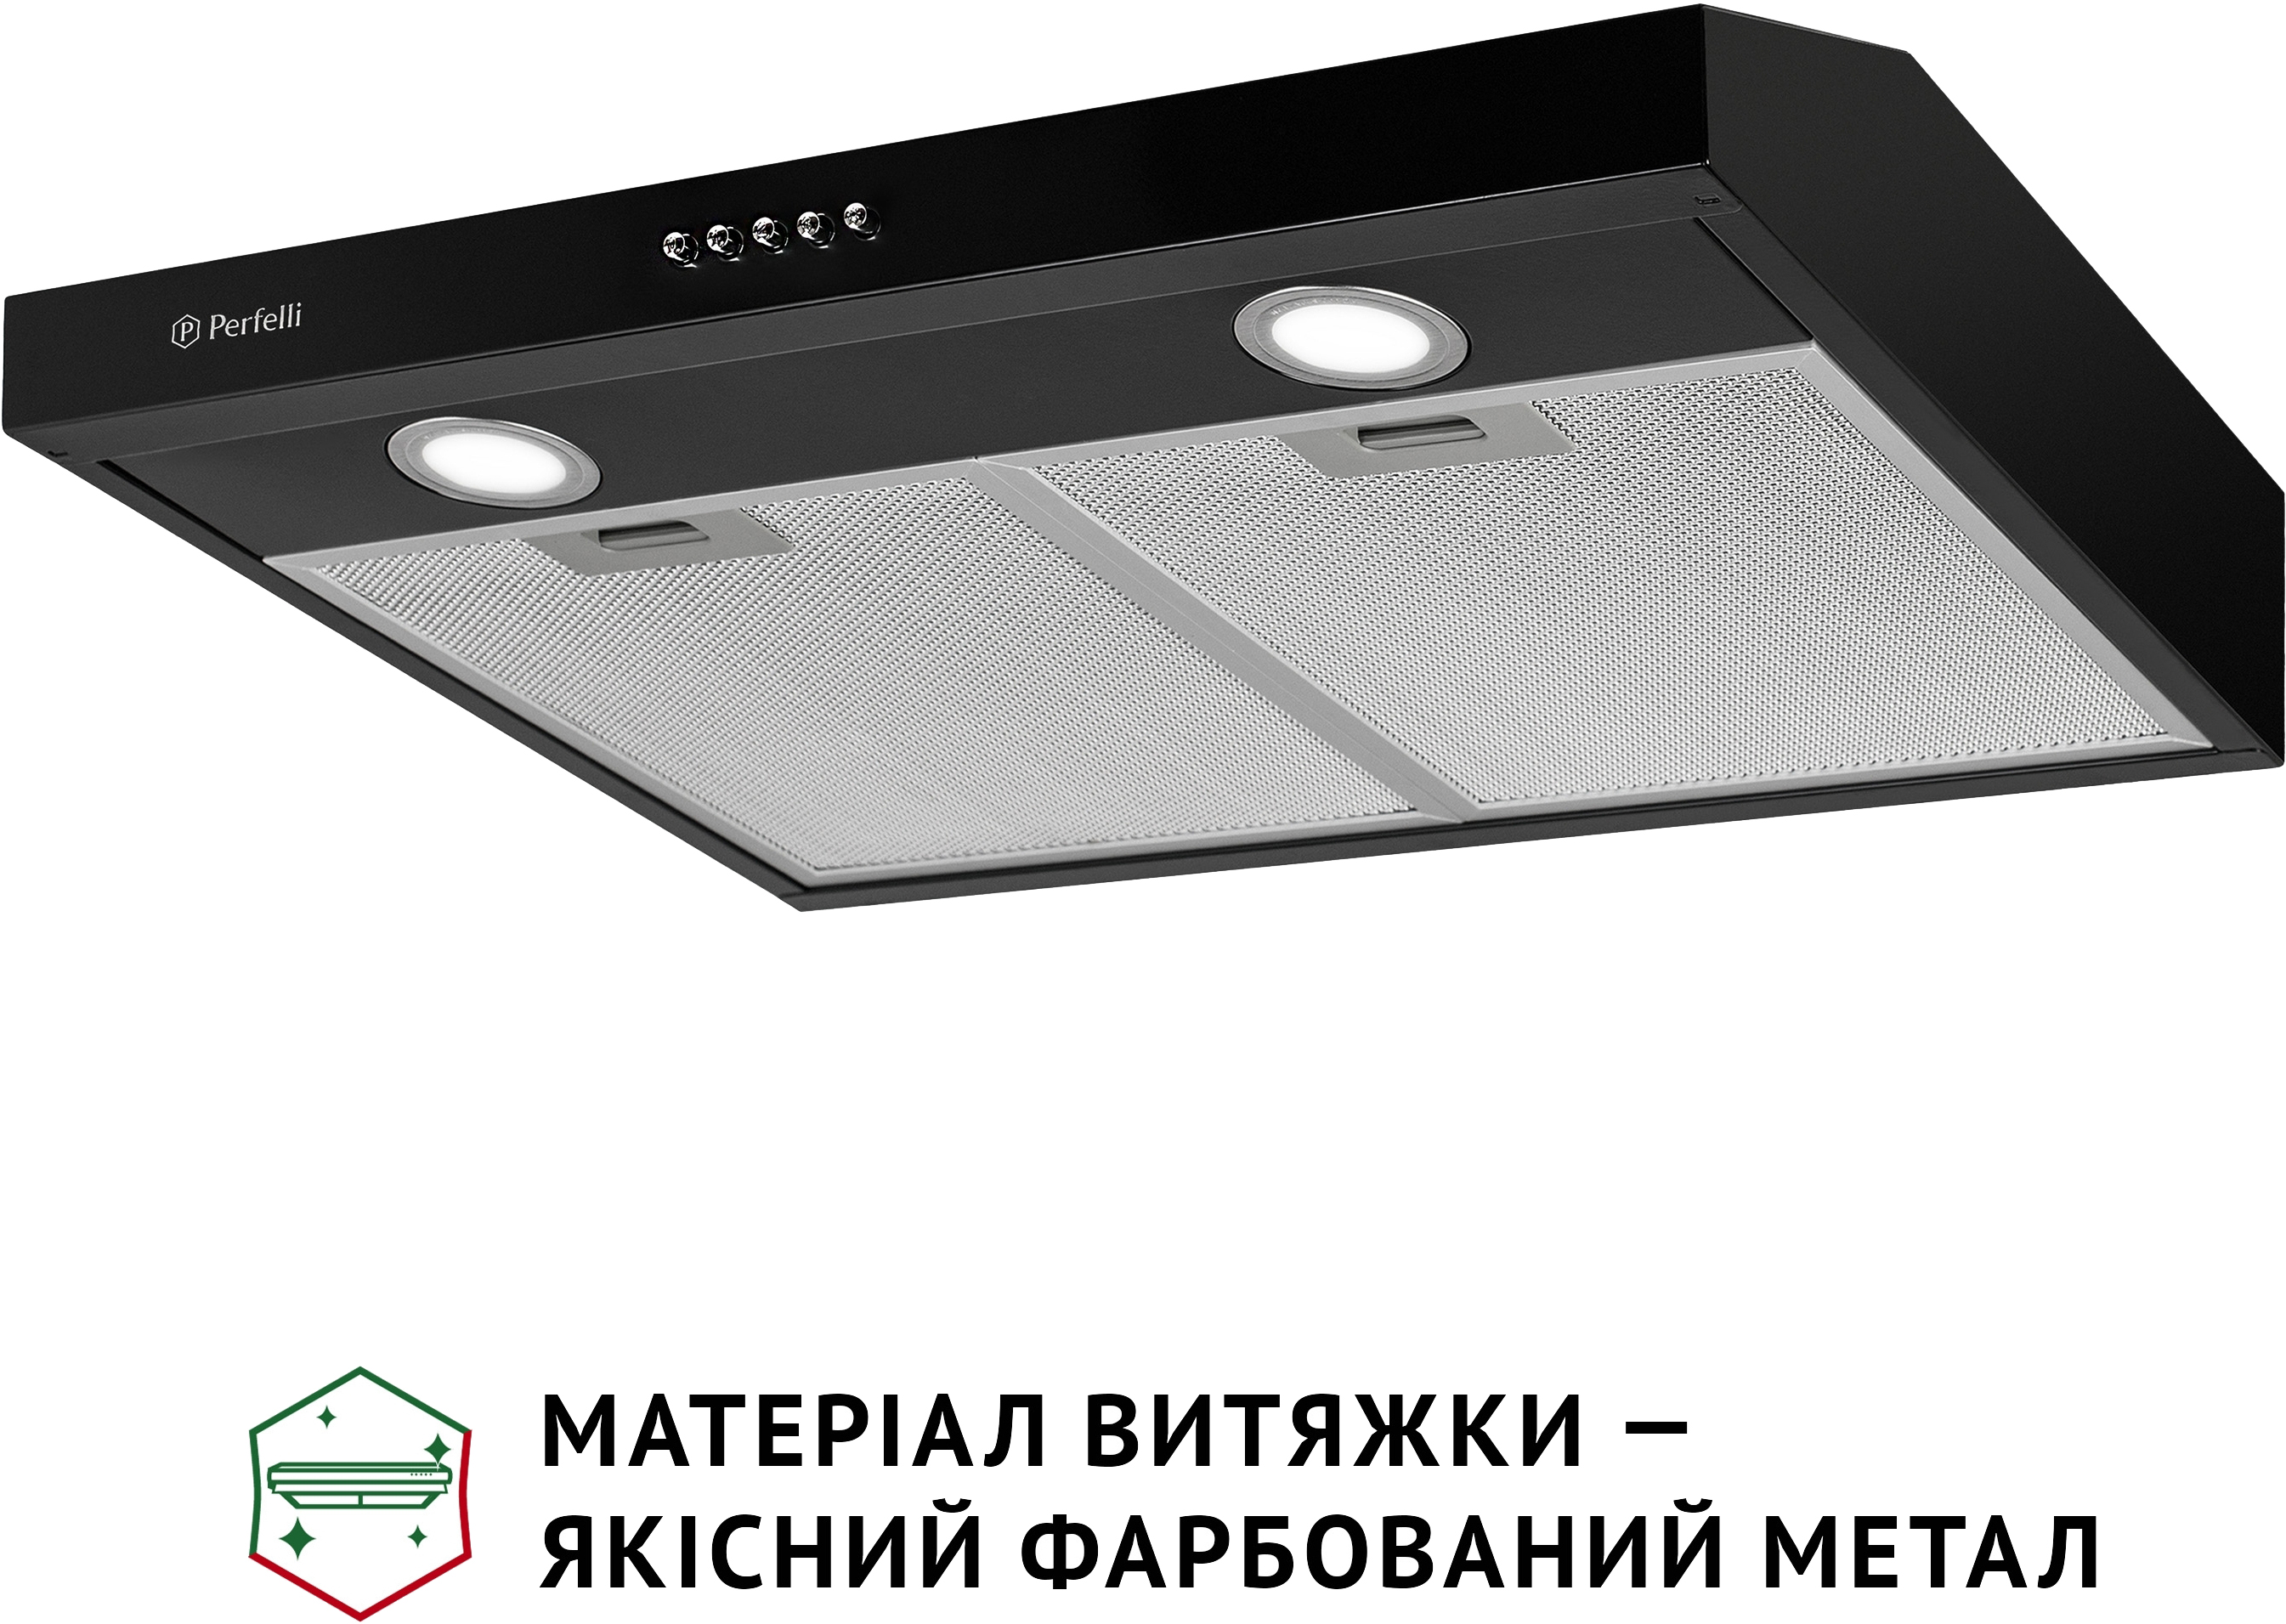 продаём Perfelli PL 6002 BL LED в Украине - фото 4